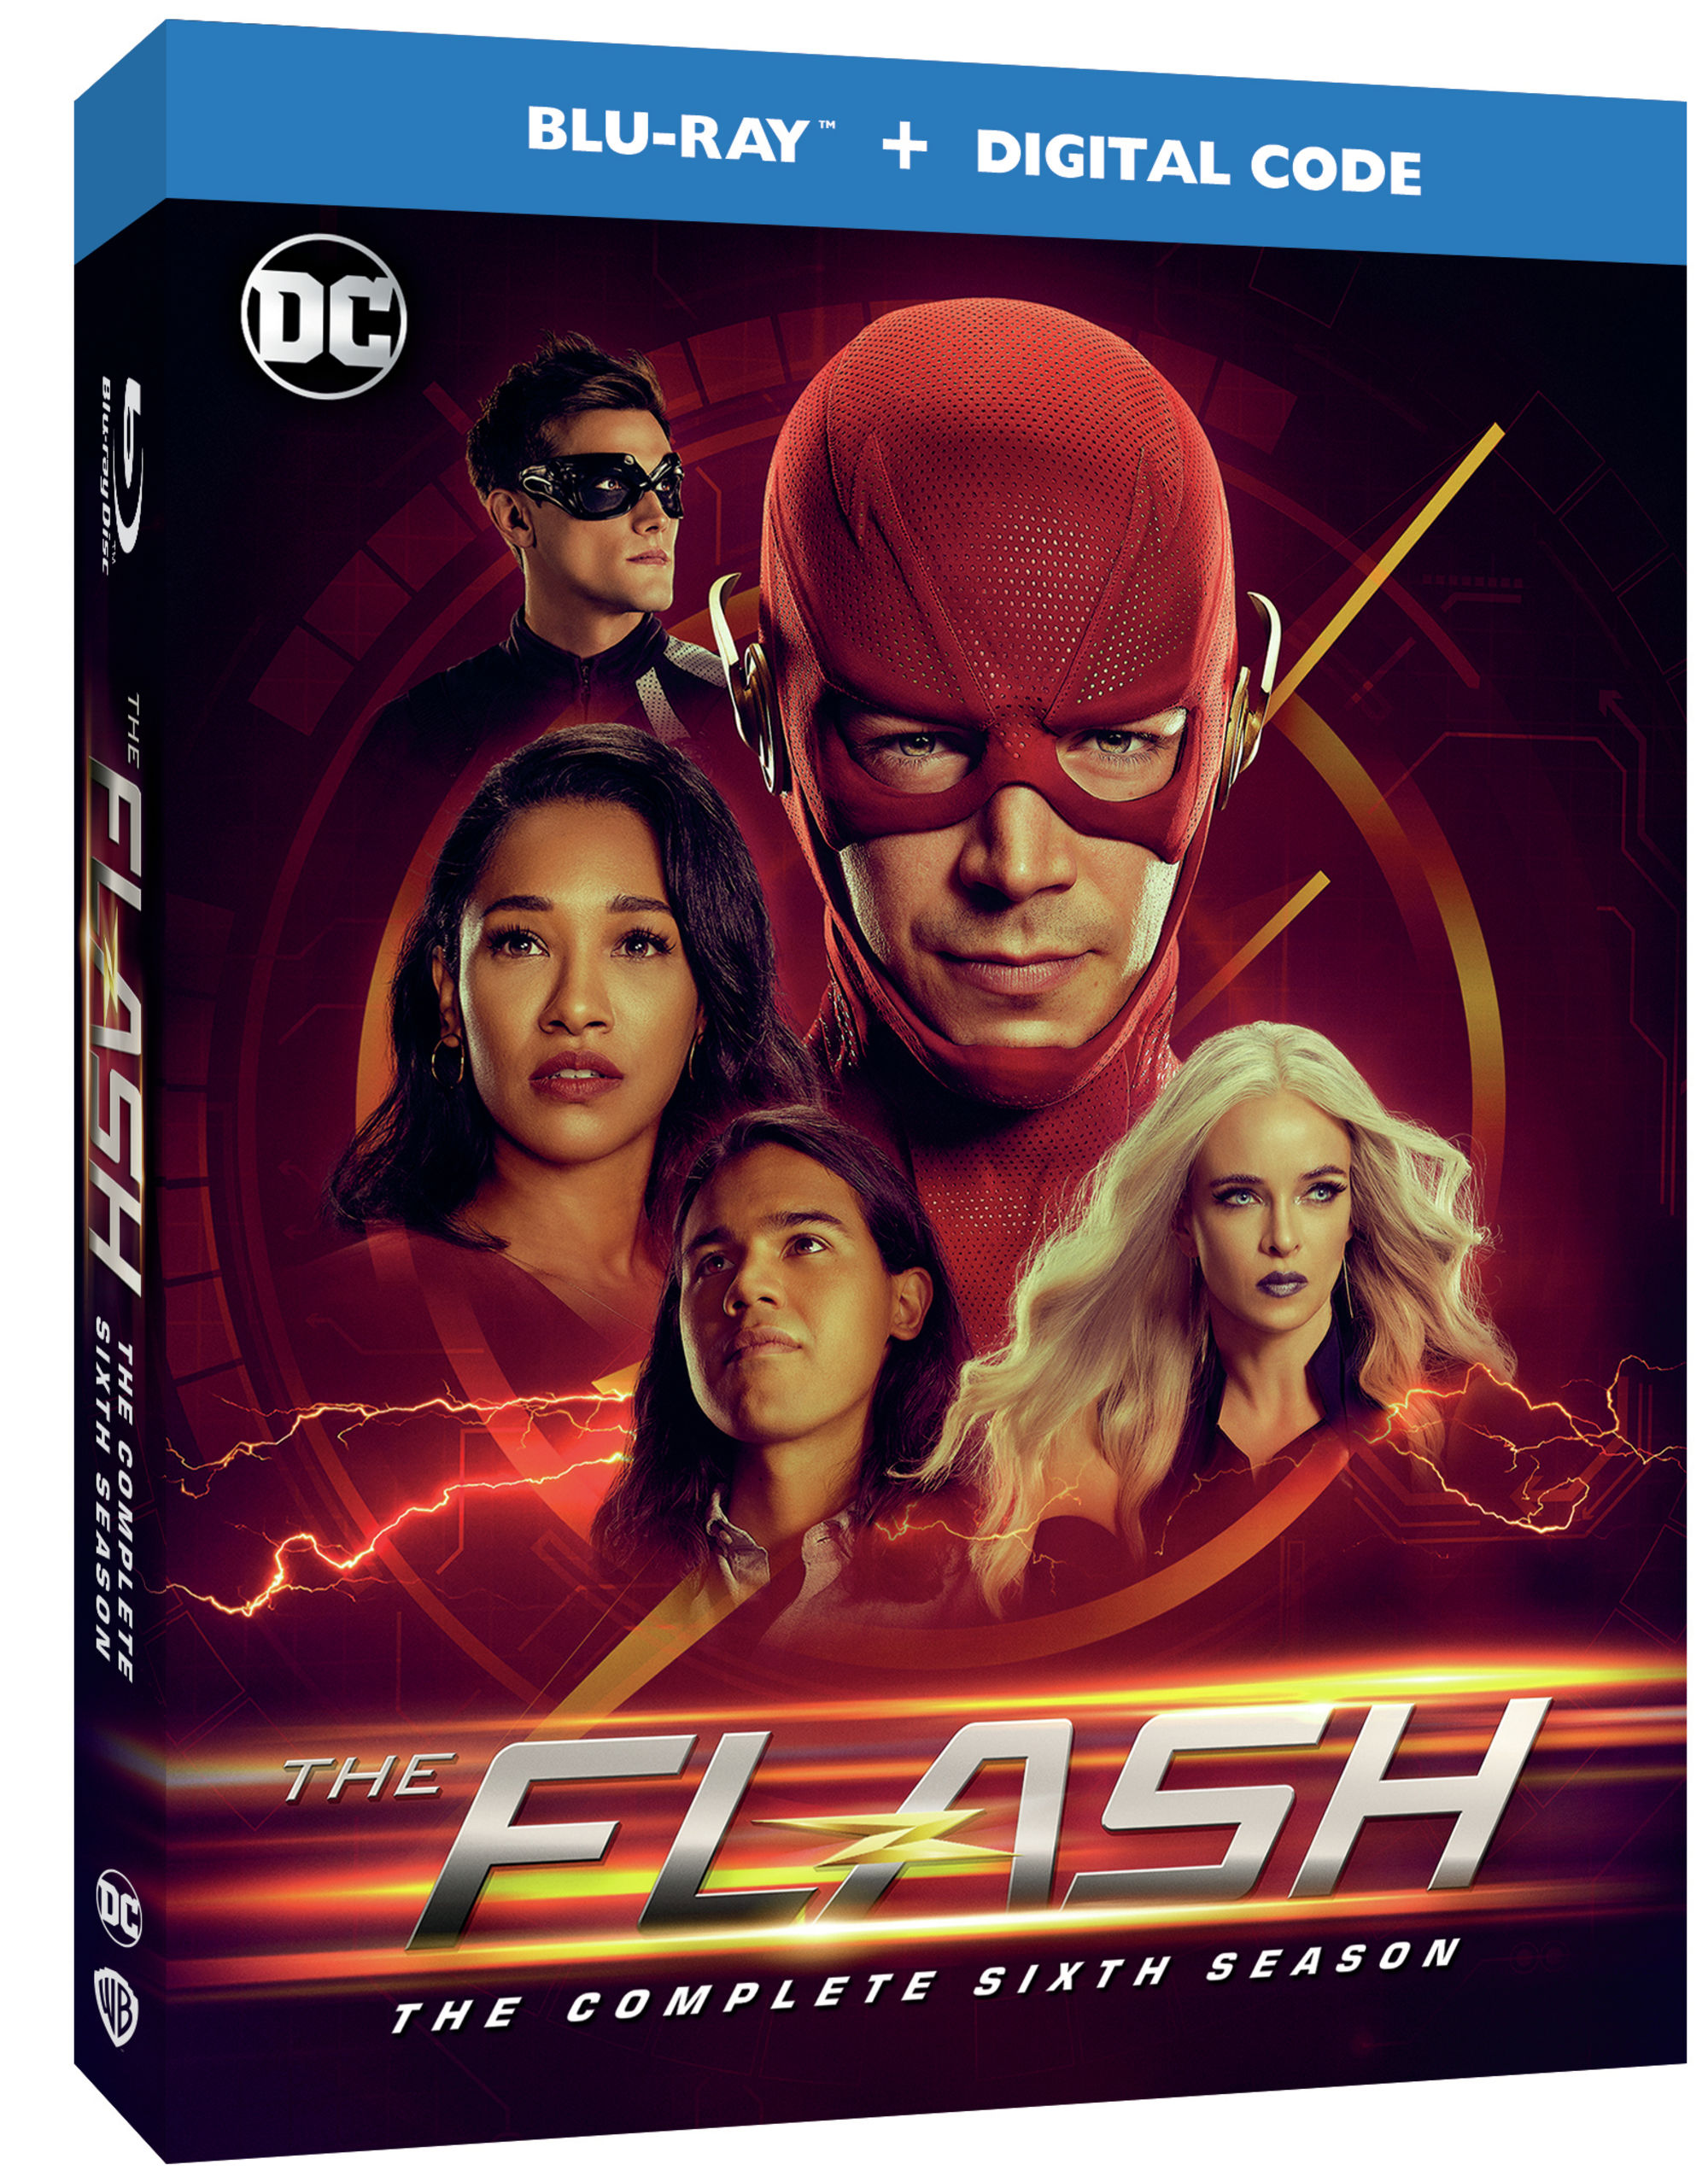 The Flash Season 6 Blu-ray DVD